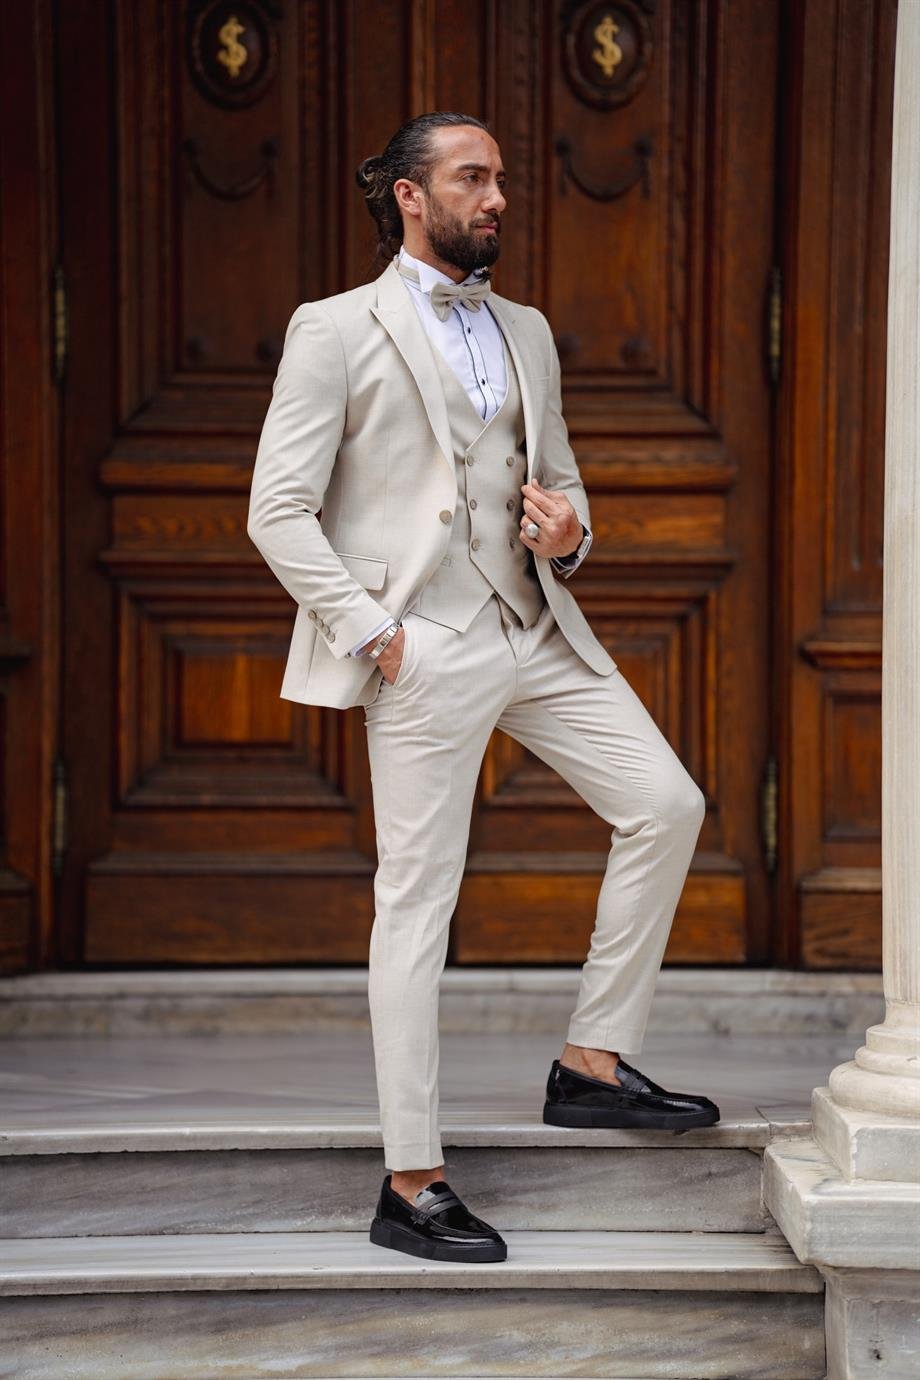 Beige Linen Fabric Wedding Suit